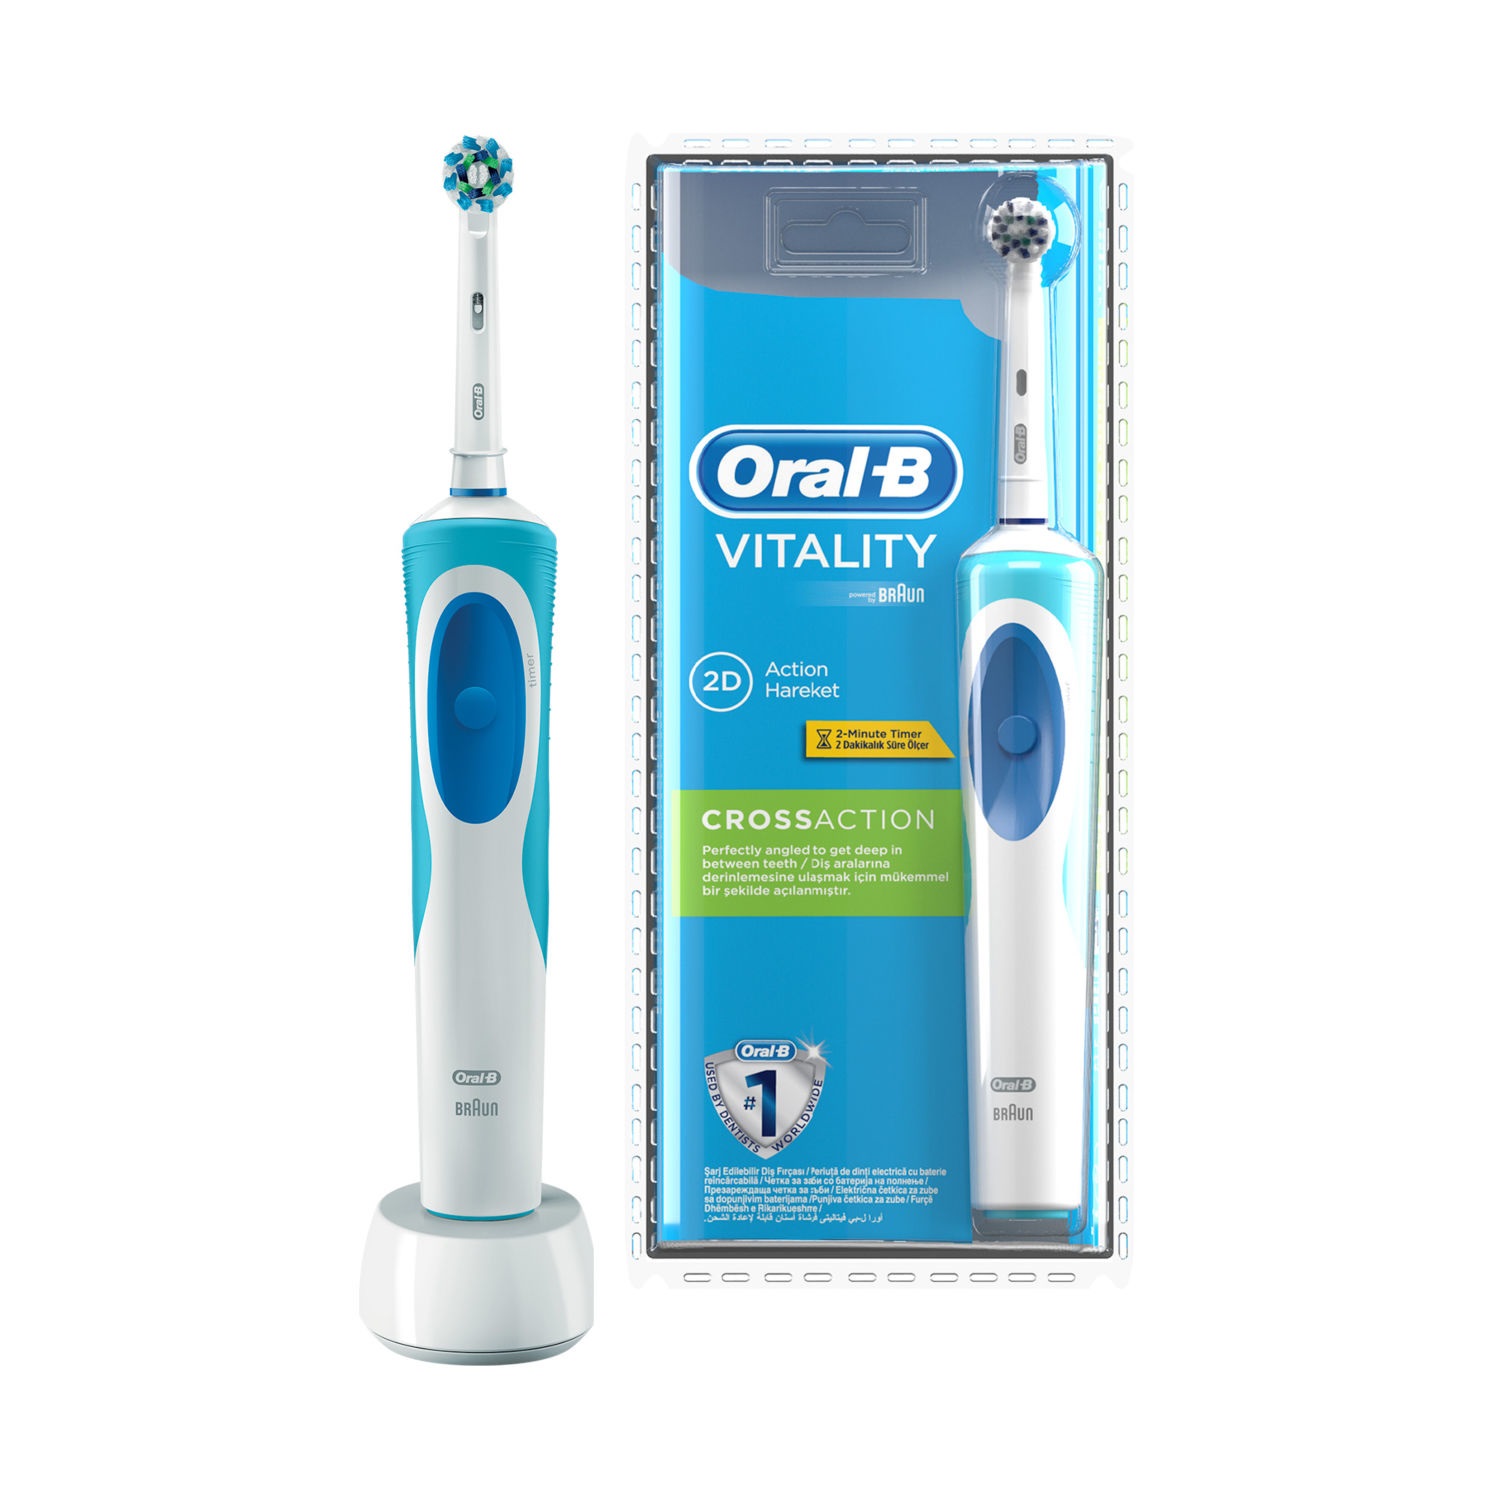 Bàn Chải Điện Oral B Vitality Plus Precision Clean, Bàn Chải Đánh Răng Oral-B, Bàn Chải Đánh Răng Điện, Bàn Chải Đánh Răng Tự Động Cho Người Lớn, Bàn Chải Đánh Răng Trẻ Em, Hàng Xách Tay Úc, Bảo Hành 6 Tháng - Smartlife.247